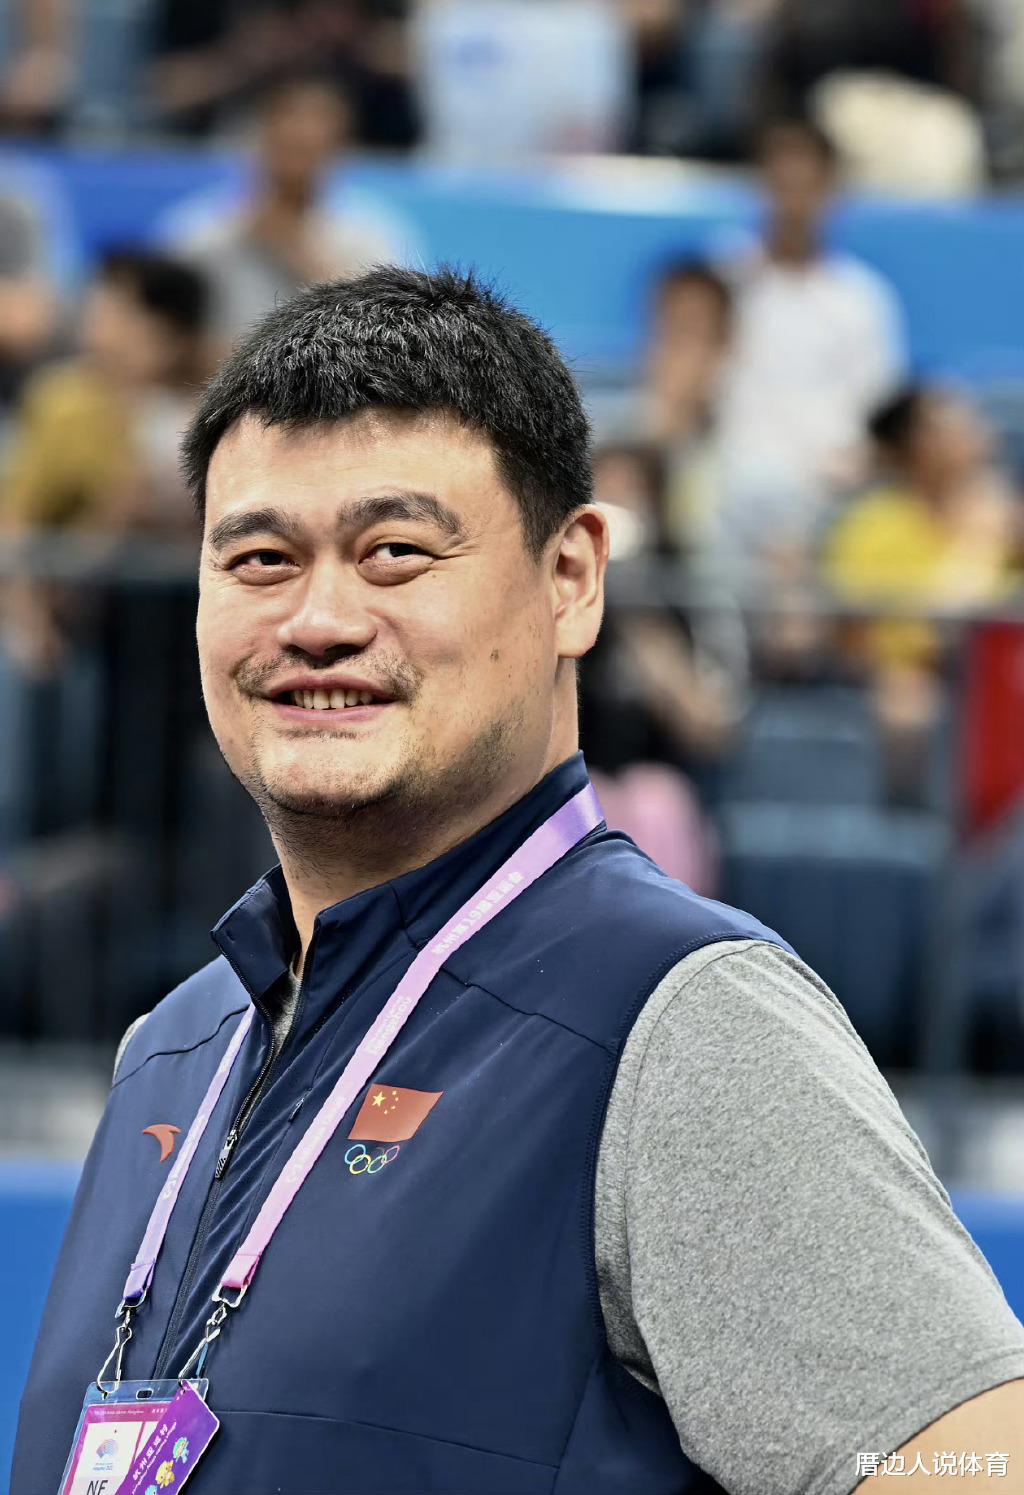 中国篮球掌门人亚运会获追捧 全场高呼姚明名字 负面缠身无碍人气